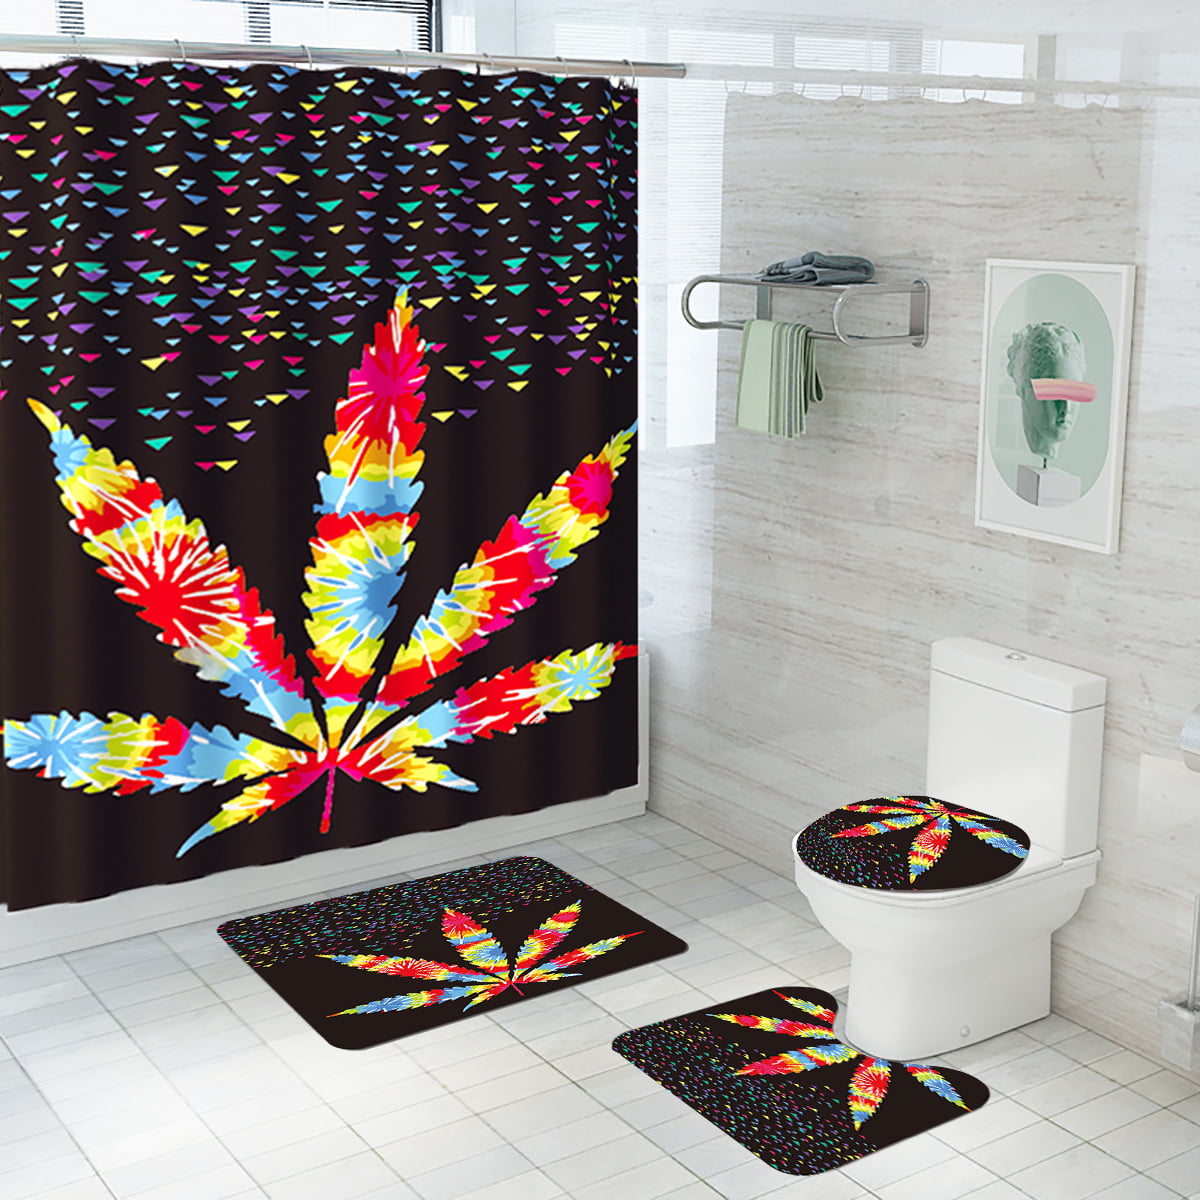 Details about   3D Red Rose Shower Curtains Bath Decor Carpet Lid Toilet Cover Mat Carpet Sets 